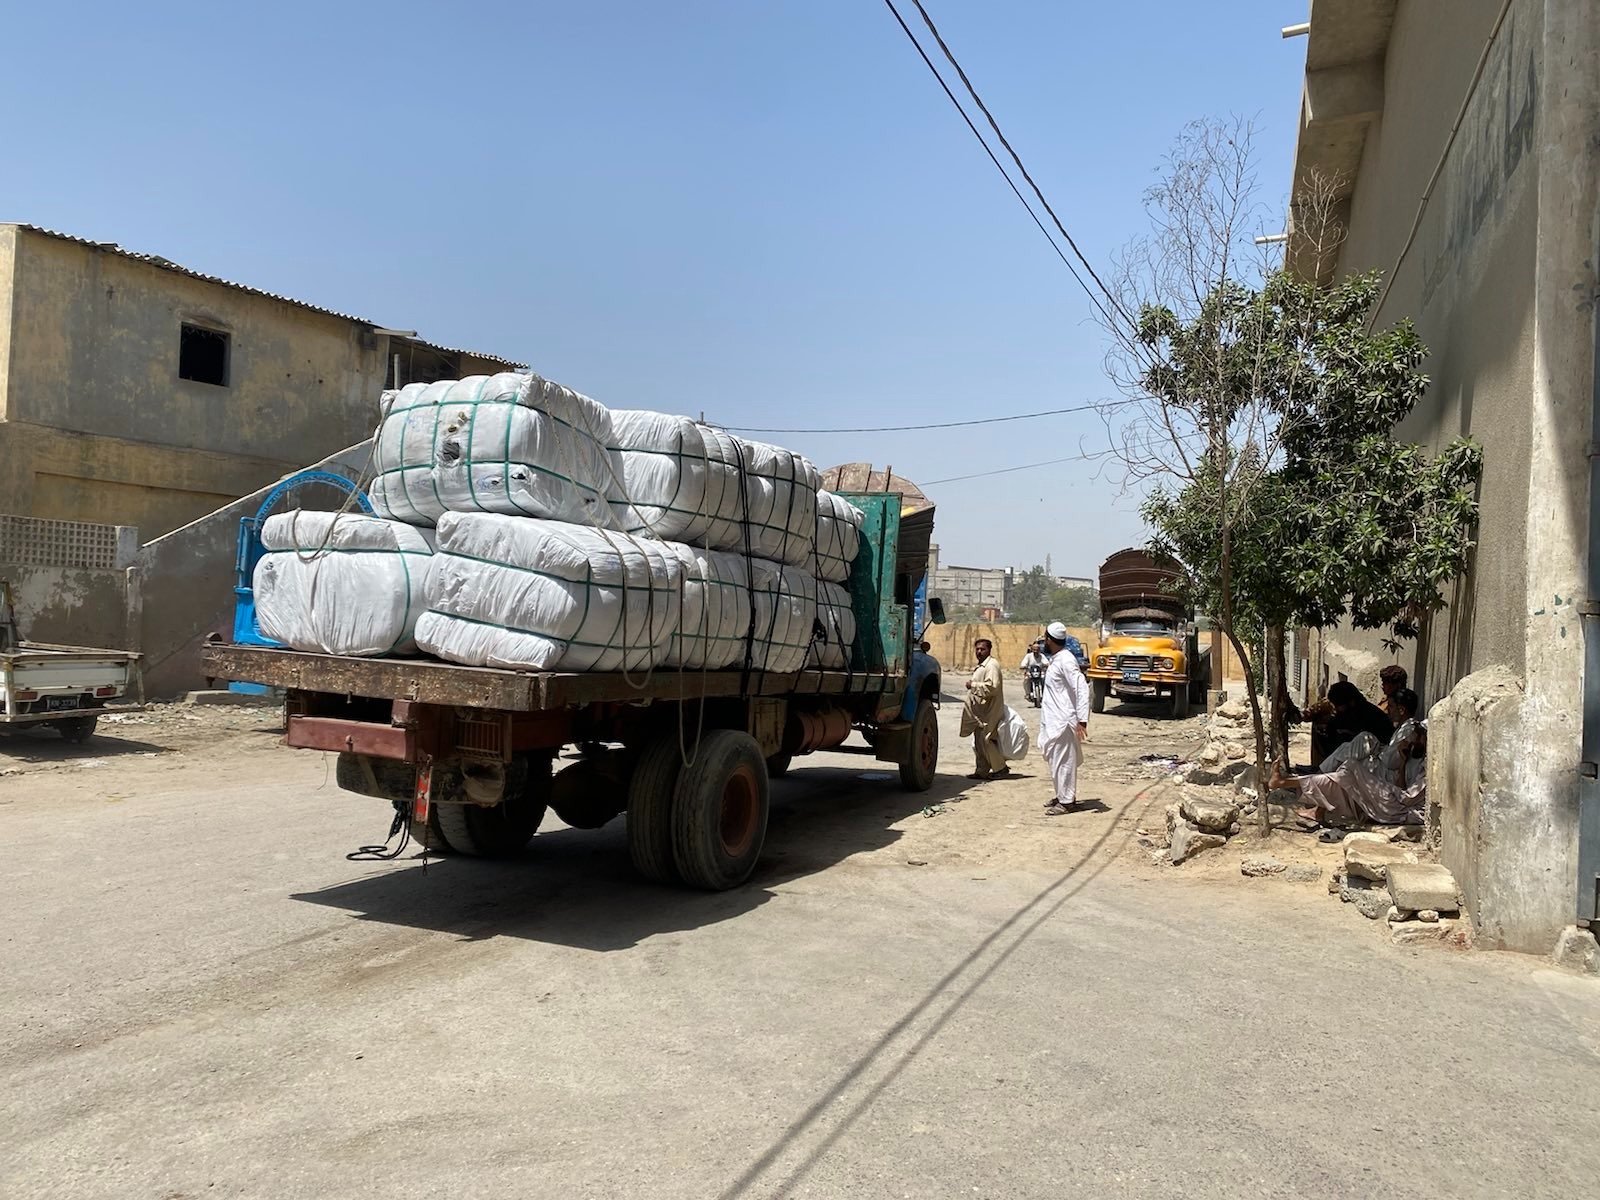  Karači, tovornjak, naložen z balami rabljenih oblačil, ki so v Pakistan prispela z zahoda. Foto: Adil Jawad 